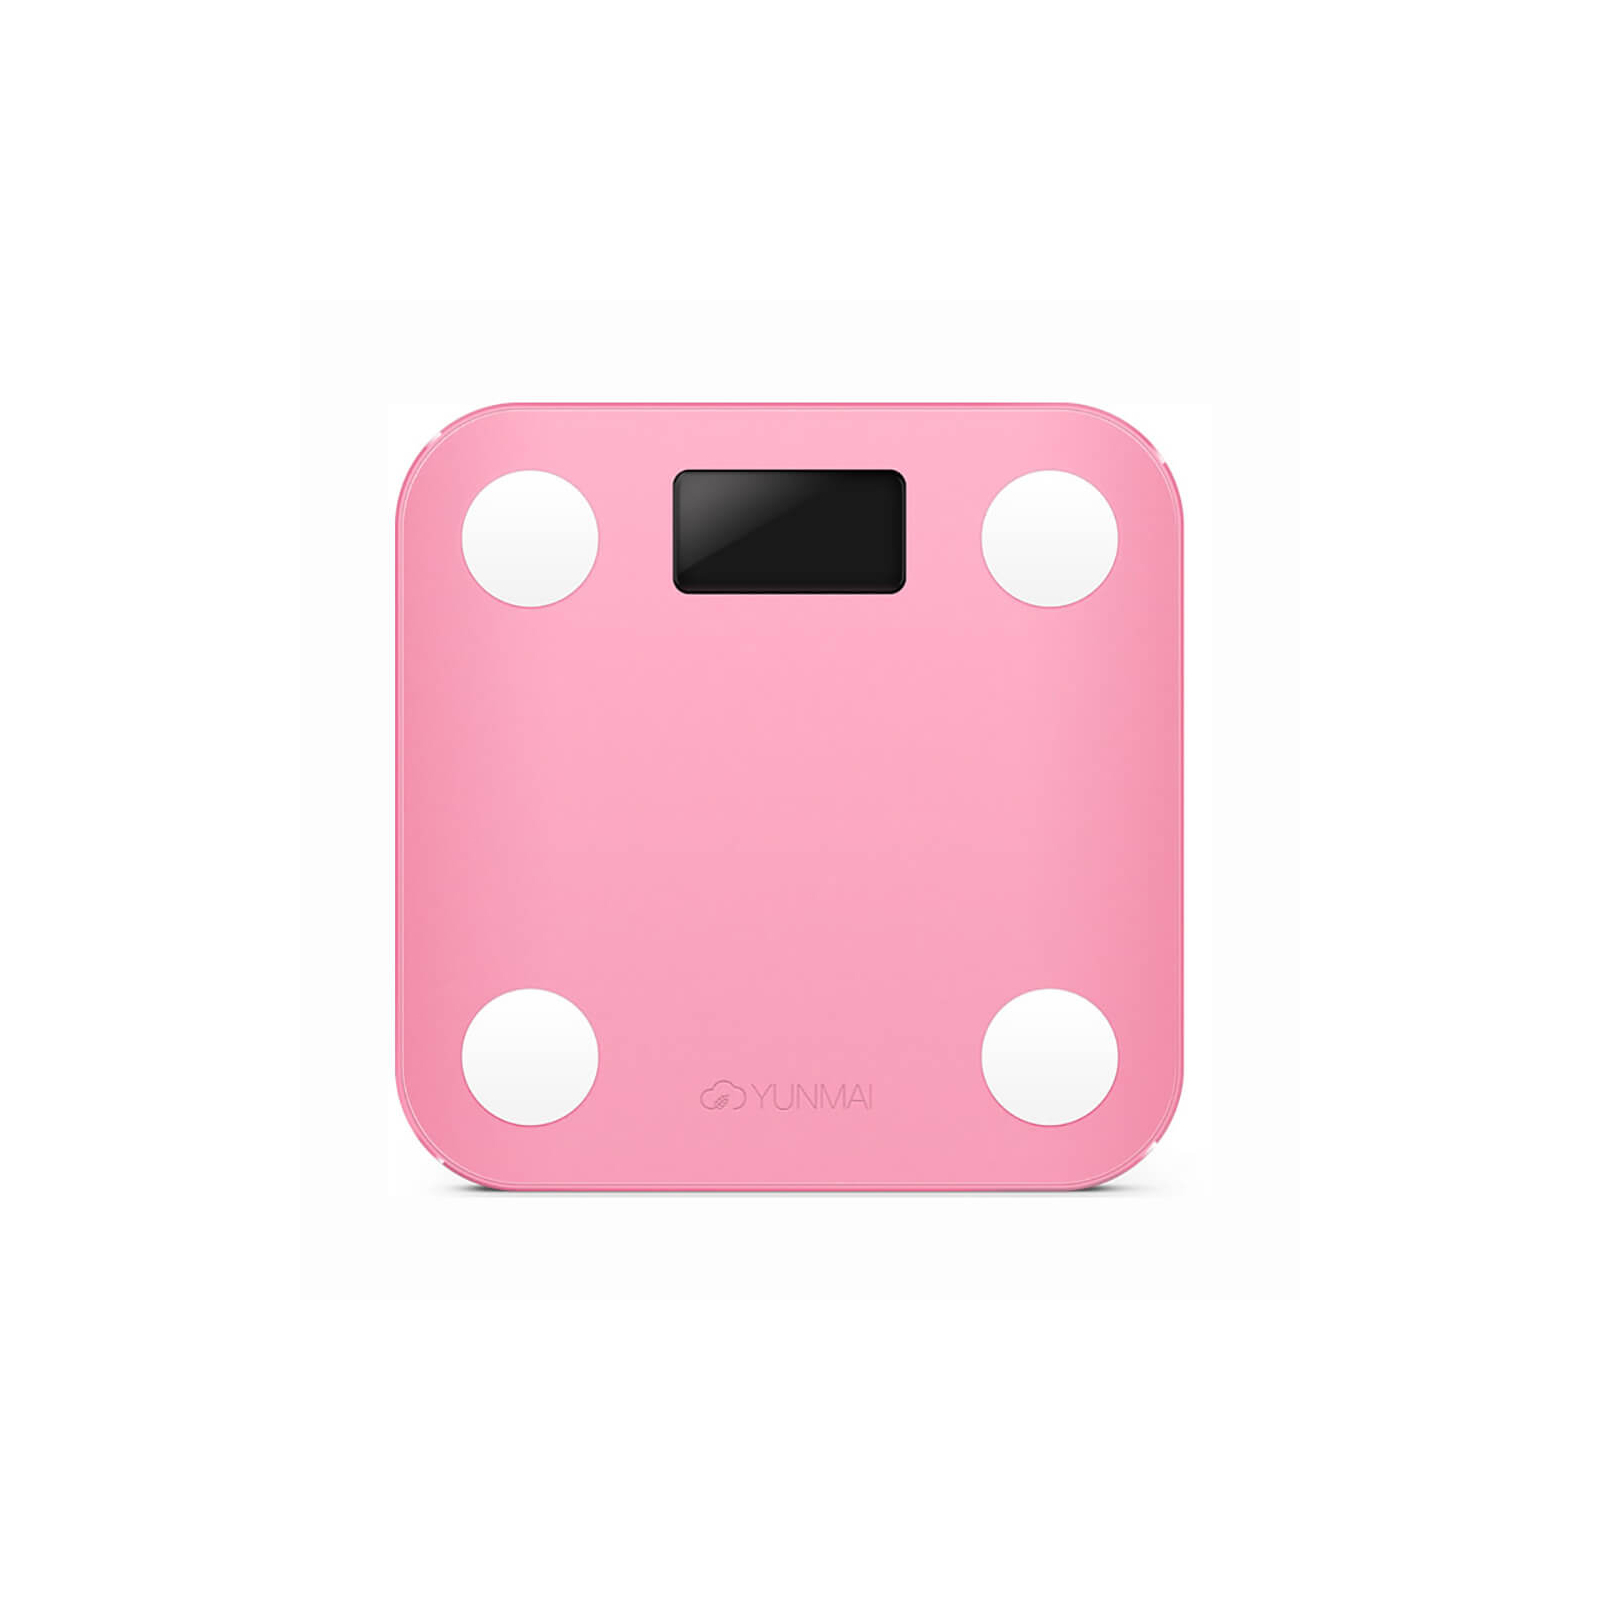 Ваги підлогові Yunmai Mini Smart Scale Pink (M1501-PK) зображення 2